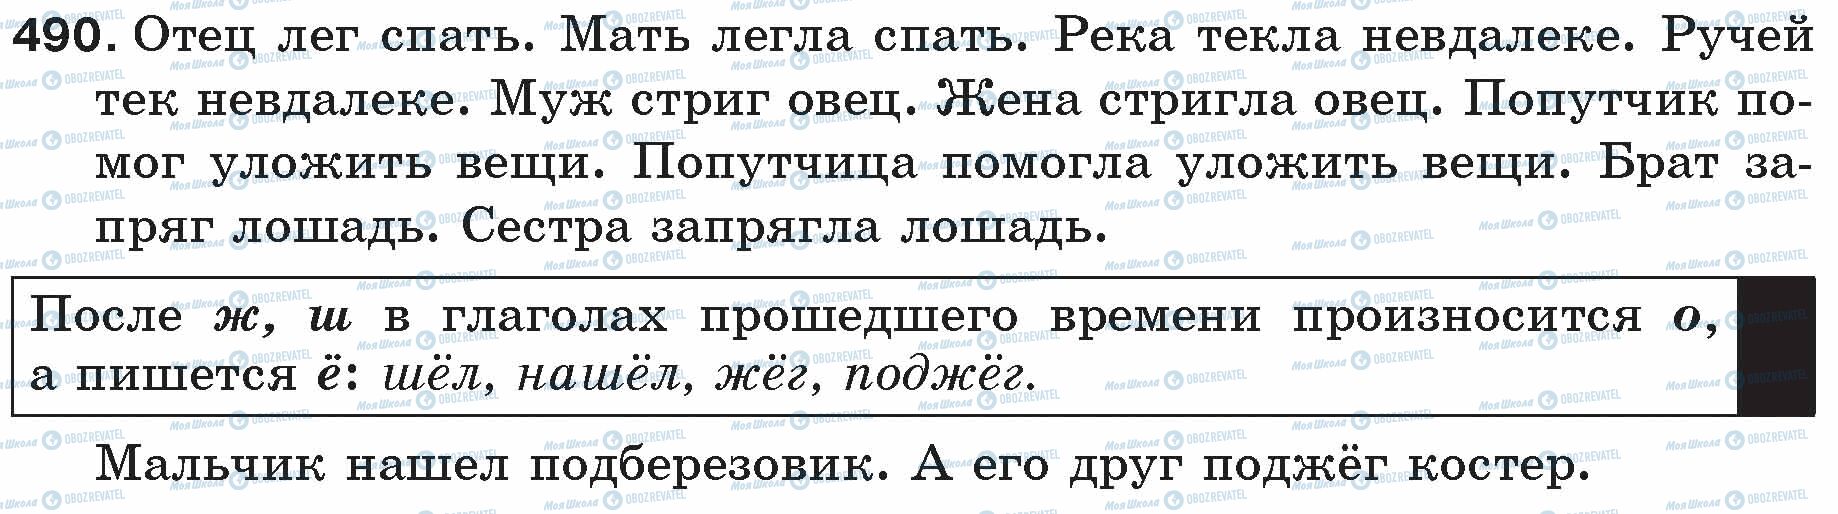 ГДЗ Російська мова 5 клас сторінка 490